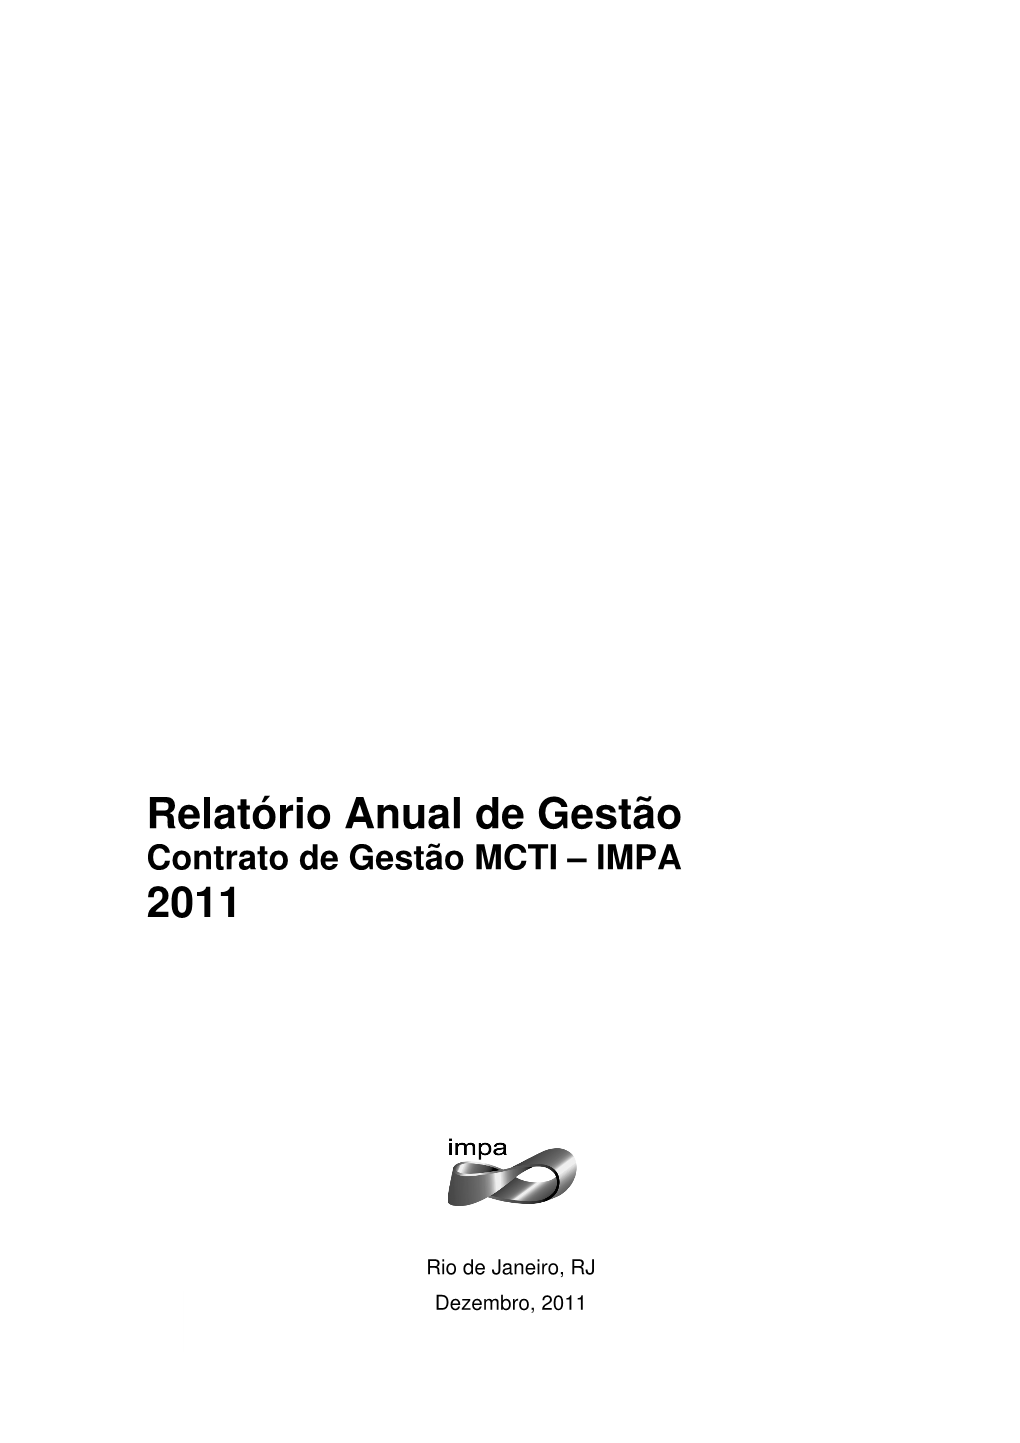 Relatório Anual De Gestão Contrato De Gestão MCTI – IMPA 2011